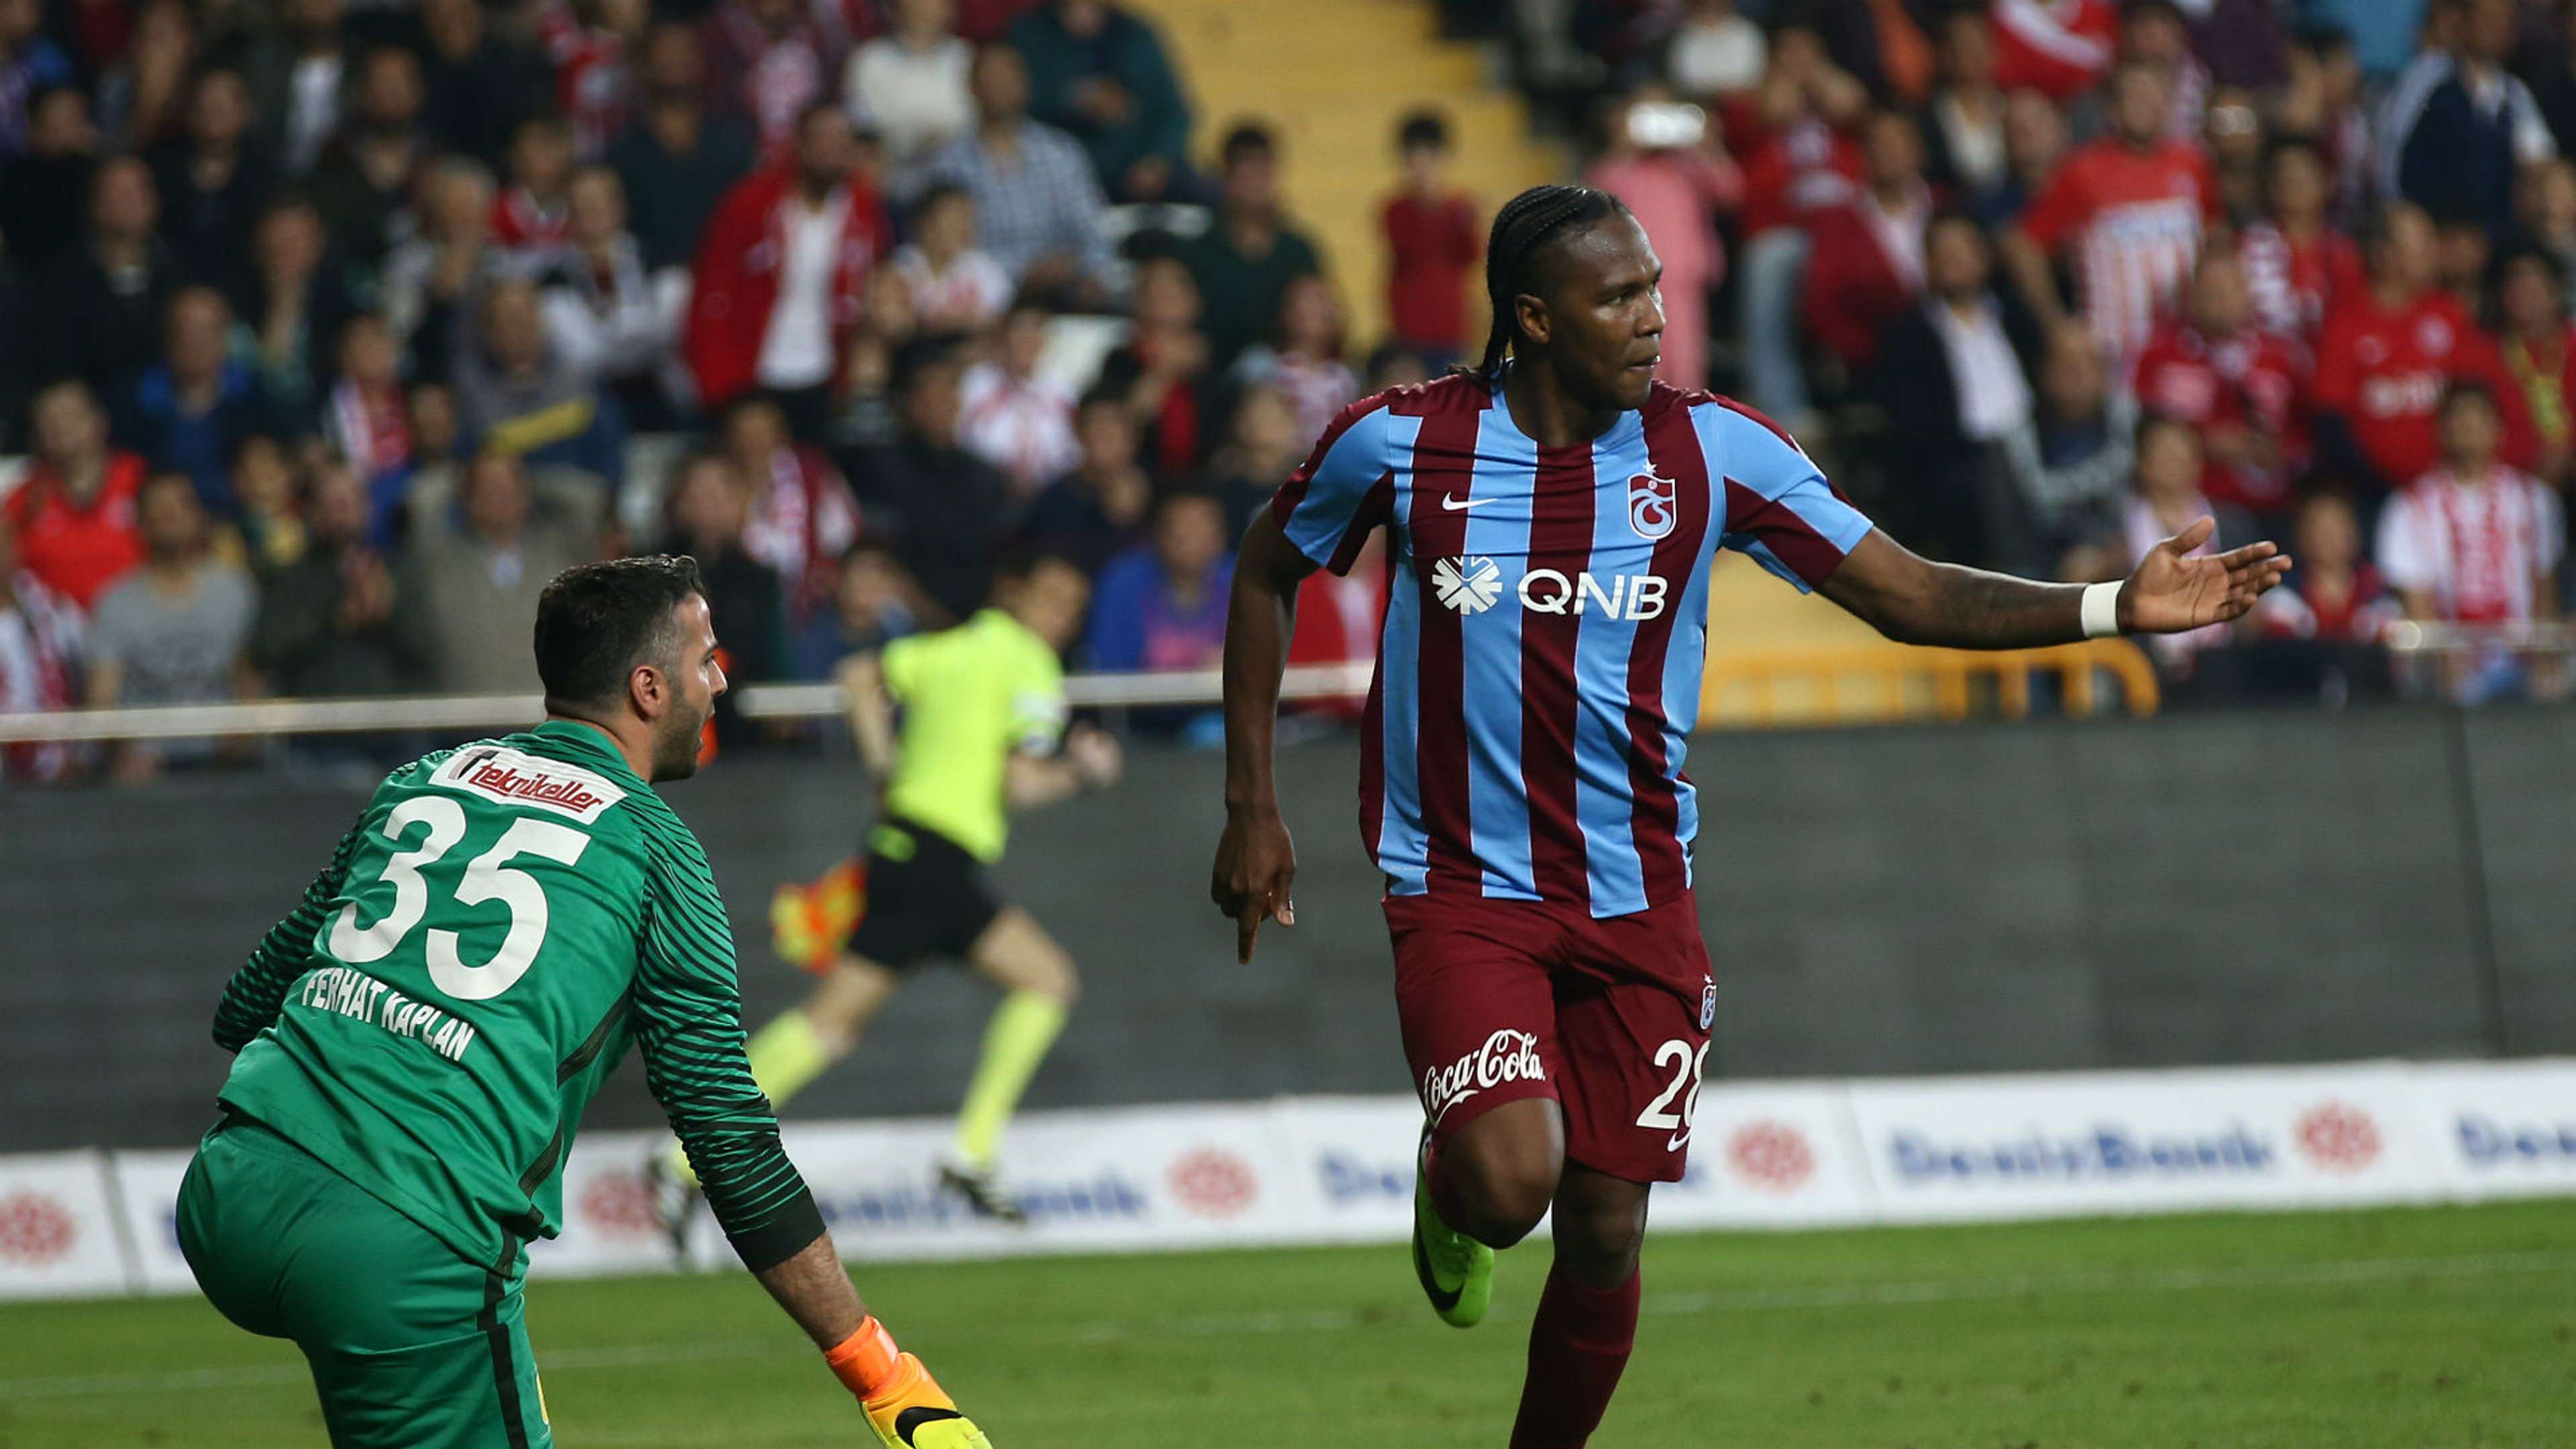 Rodallega Antalyaspor - Trabzonspor 0422017